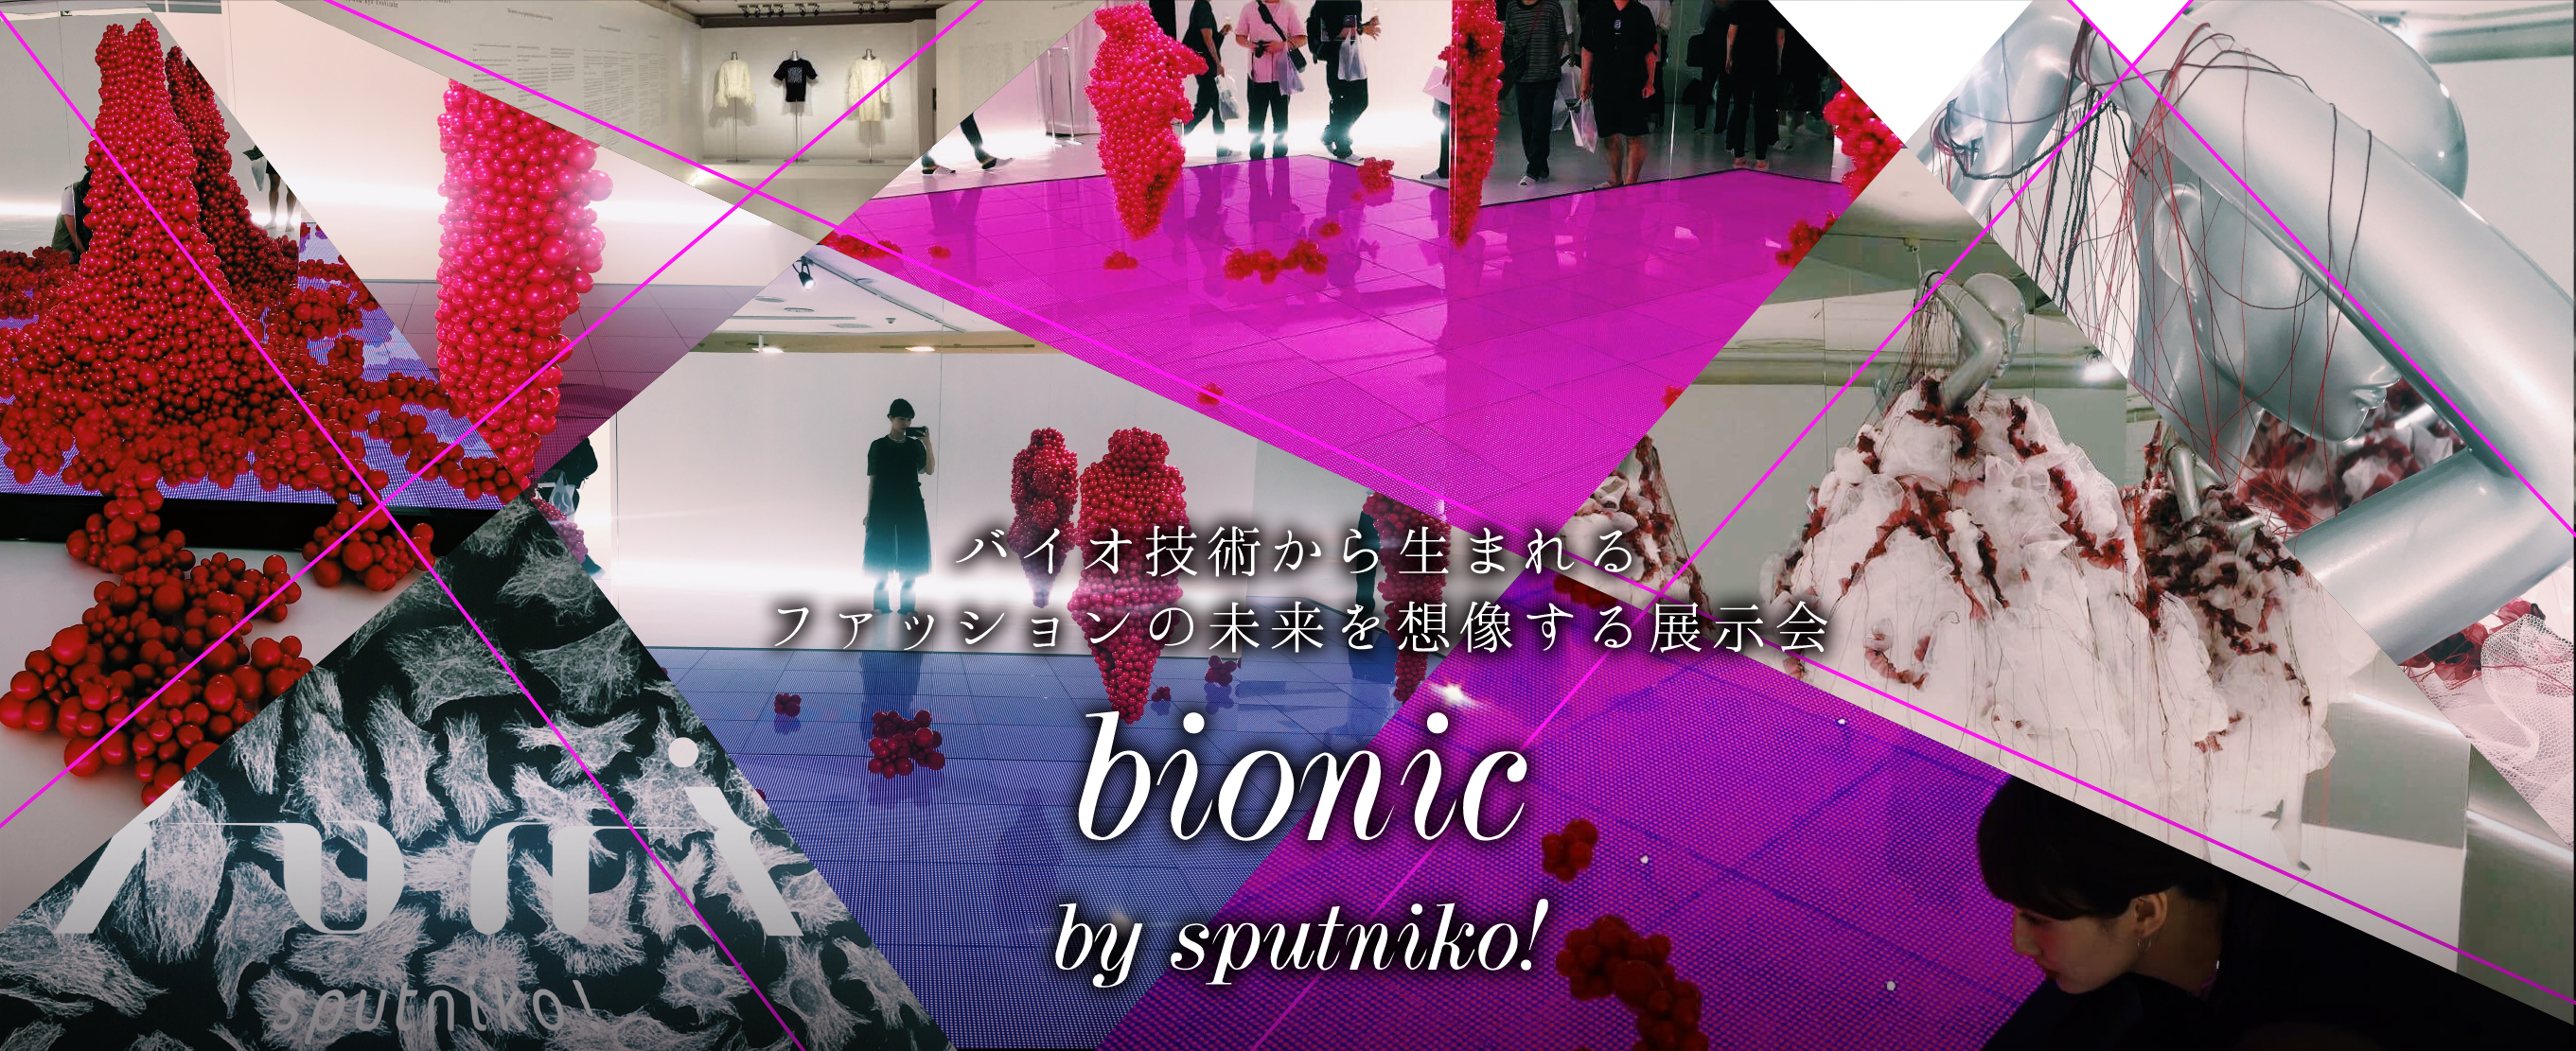 バイオ技術から生まれるファッションの未来を想像する展示会「bionic by sputniko!」を